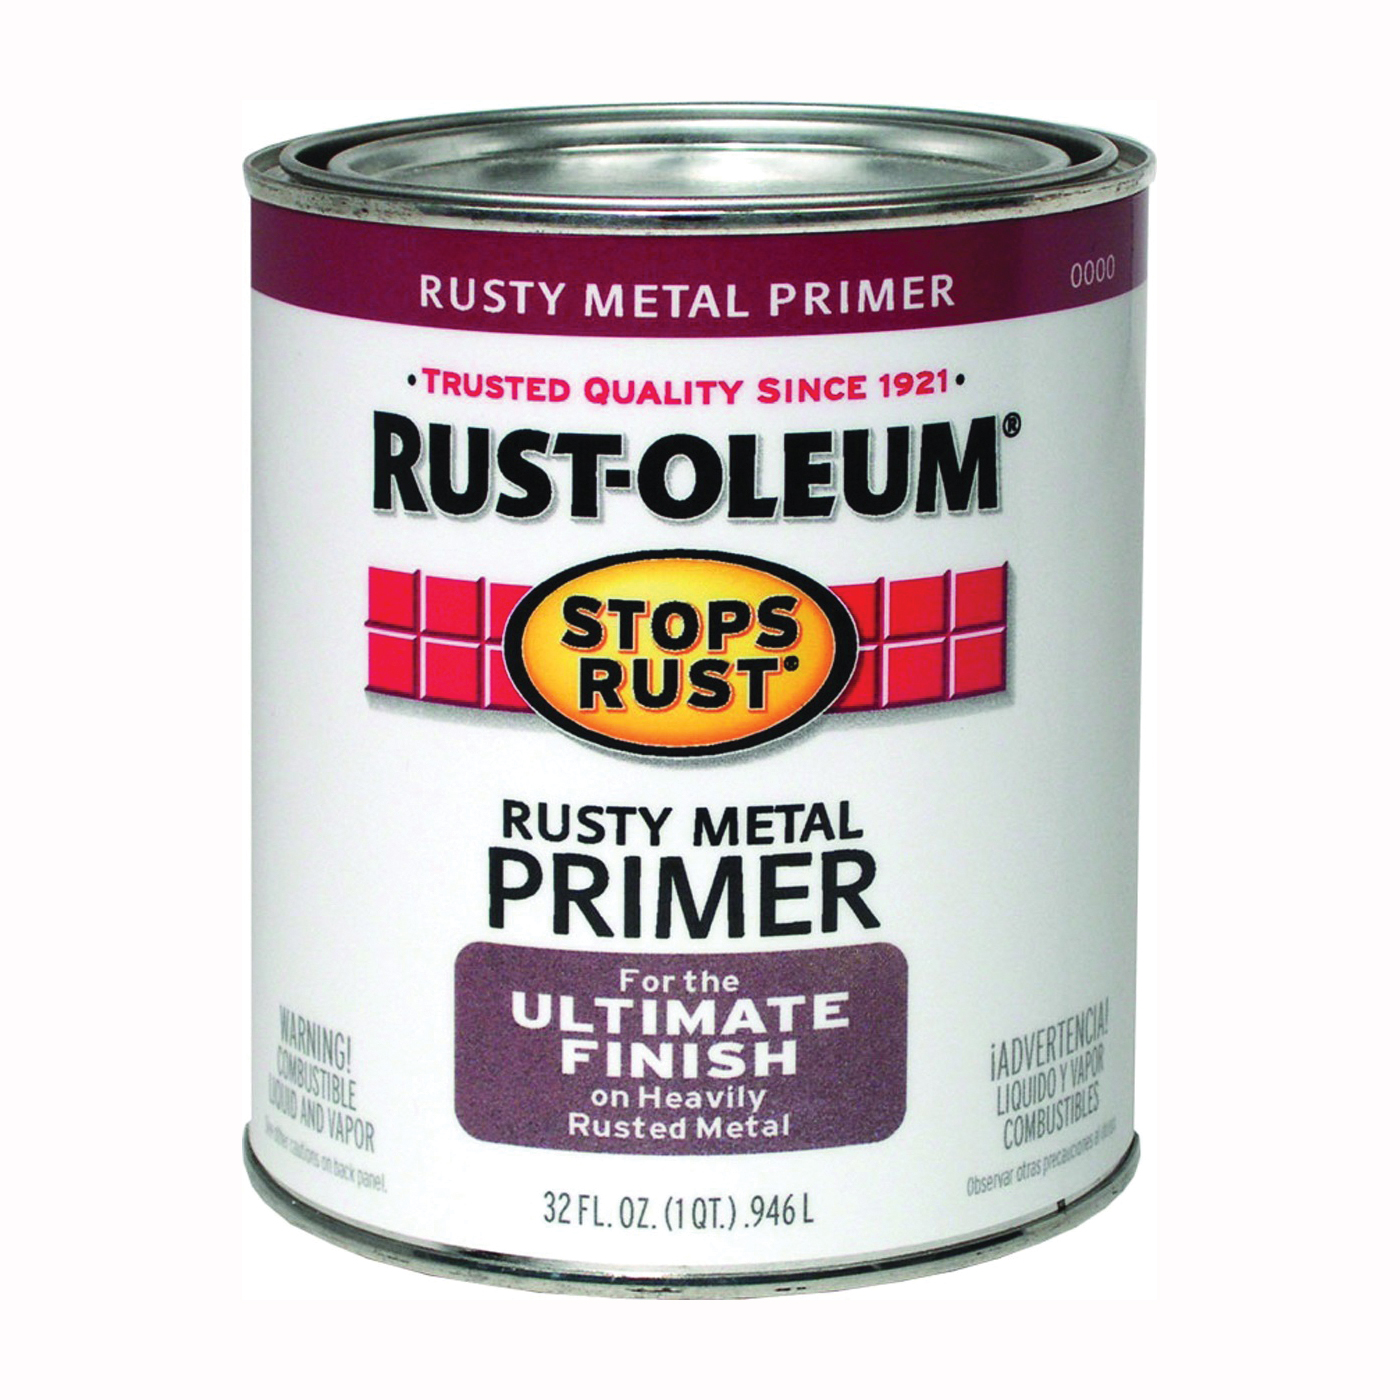 STOPS RUST 7769502 Rusty Metal Primer, Flat, Rusty Metal Primer, 1 qt